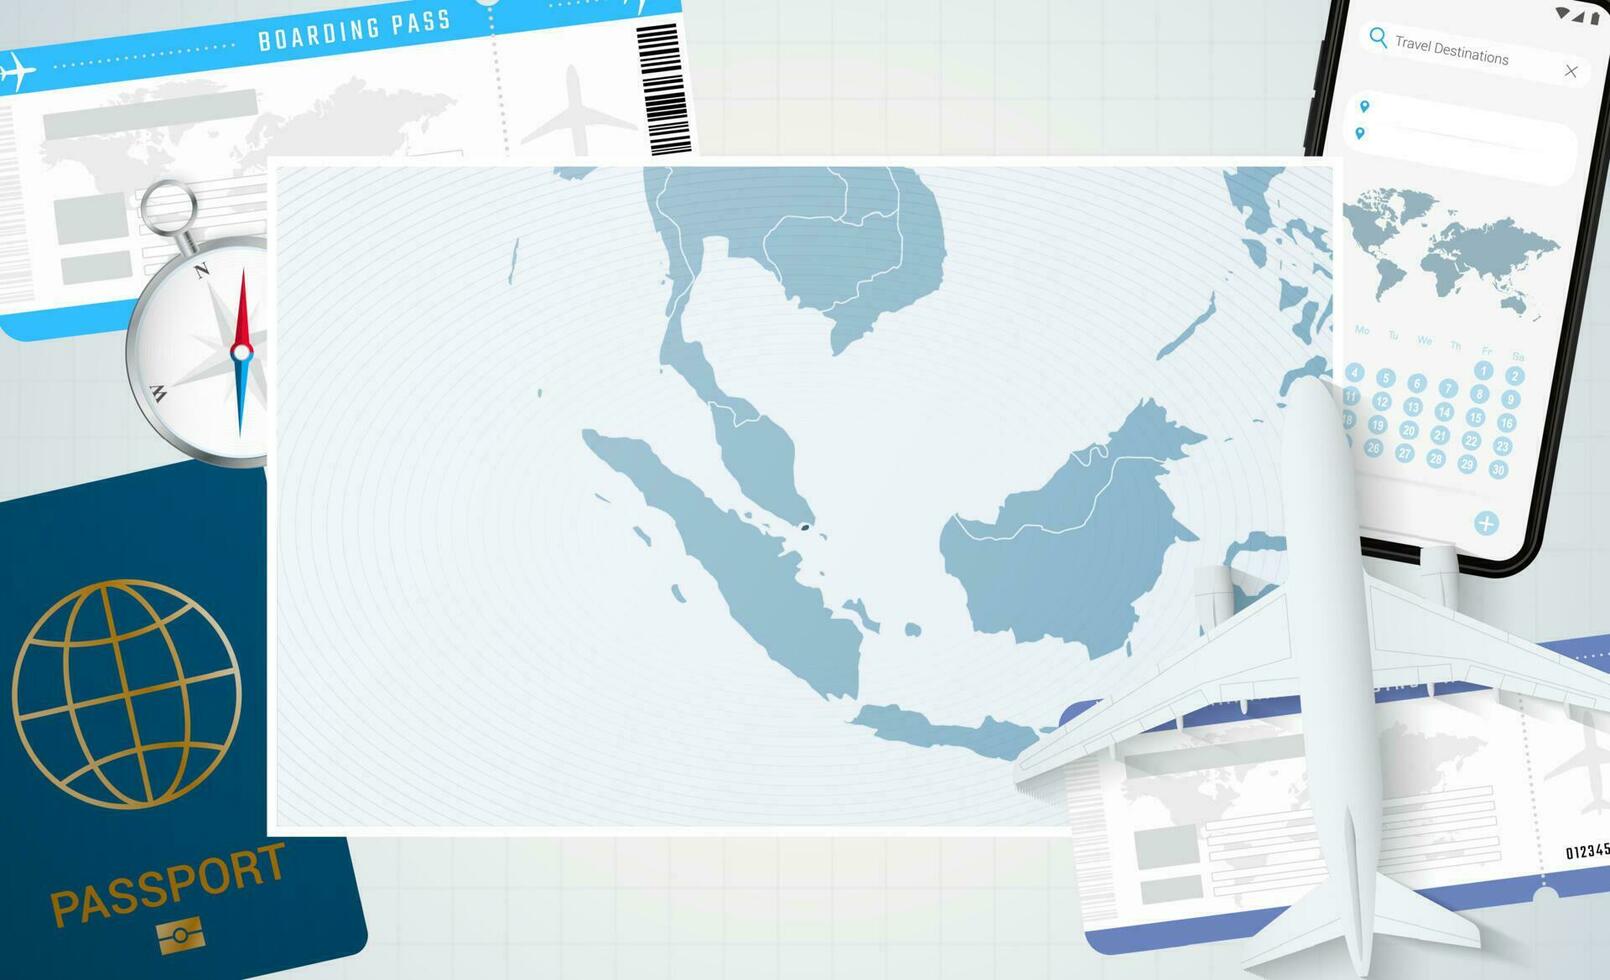 reis naar Singapore, illustratie met een kaart van Singapore. achtergrond met vliegtuig, cel telefoon, paspoort, kompas en kaartjes. vector